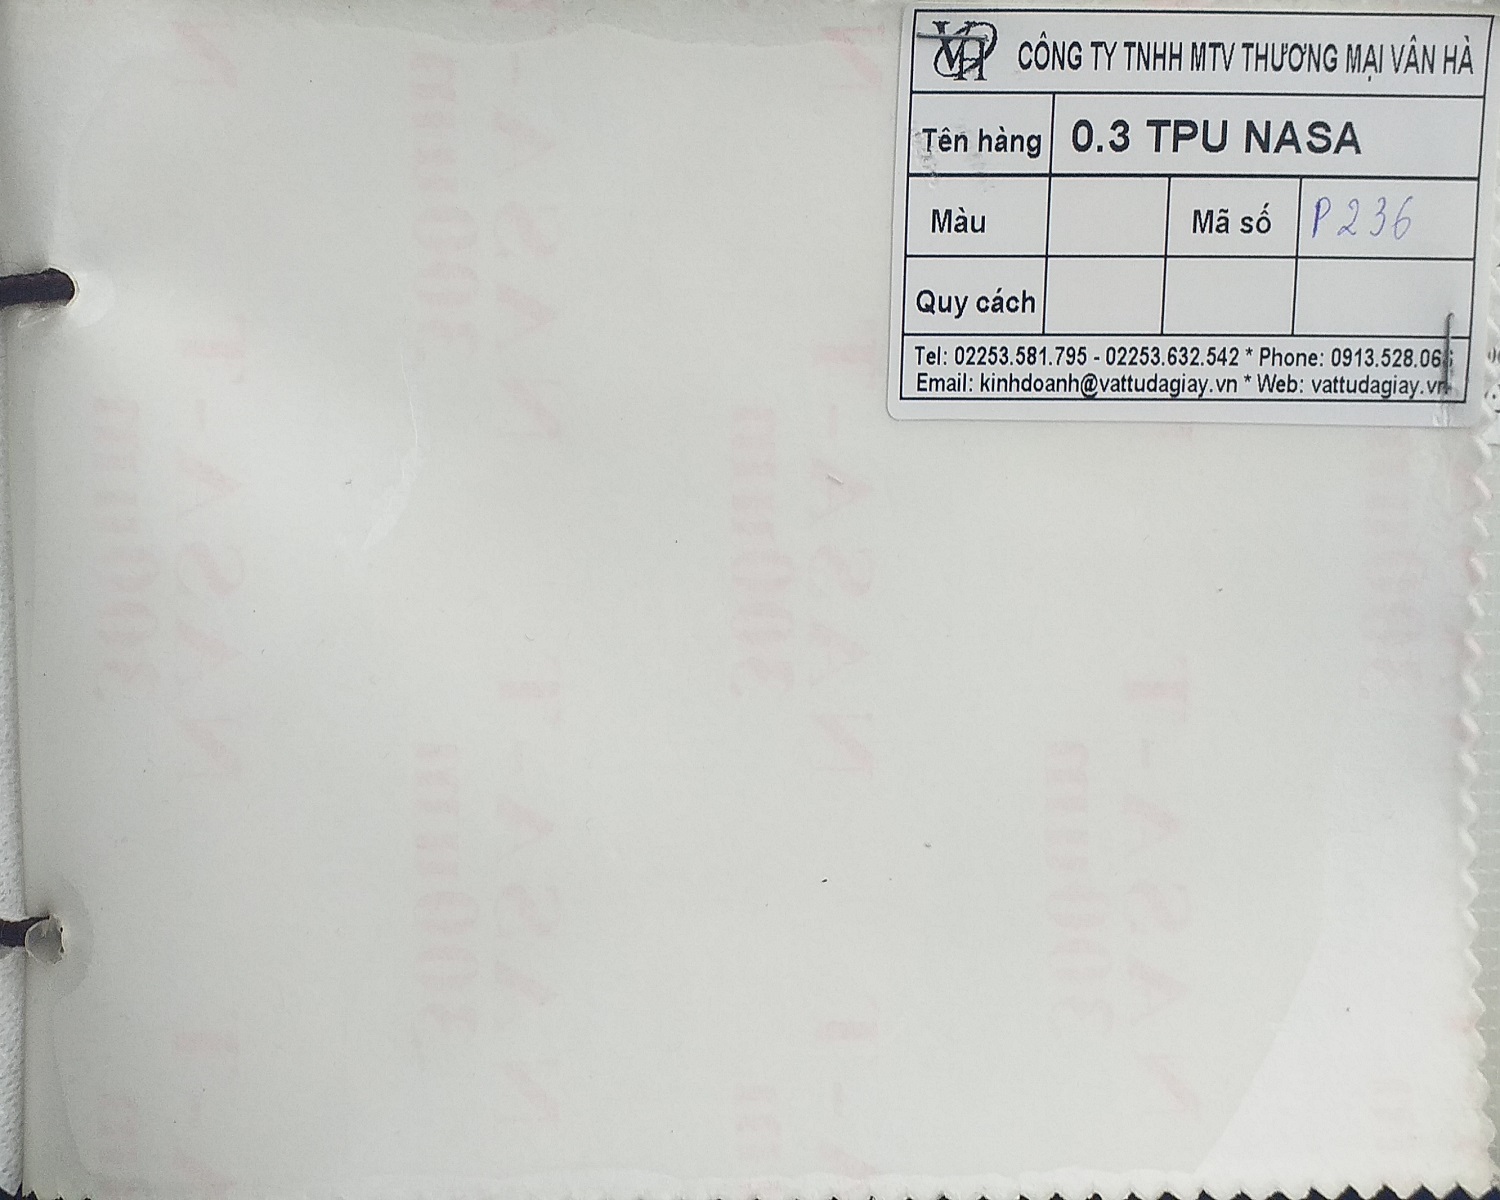 03 tpu nasa ma p236 - 0.3 TPU Nasa mã P236